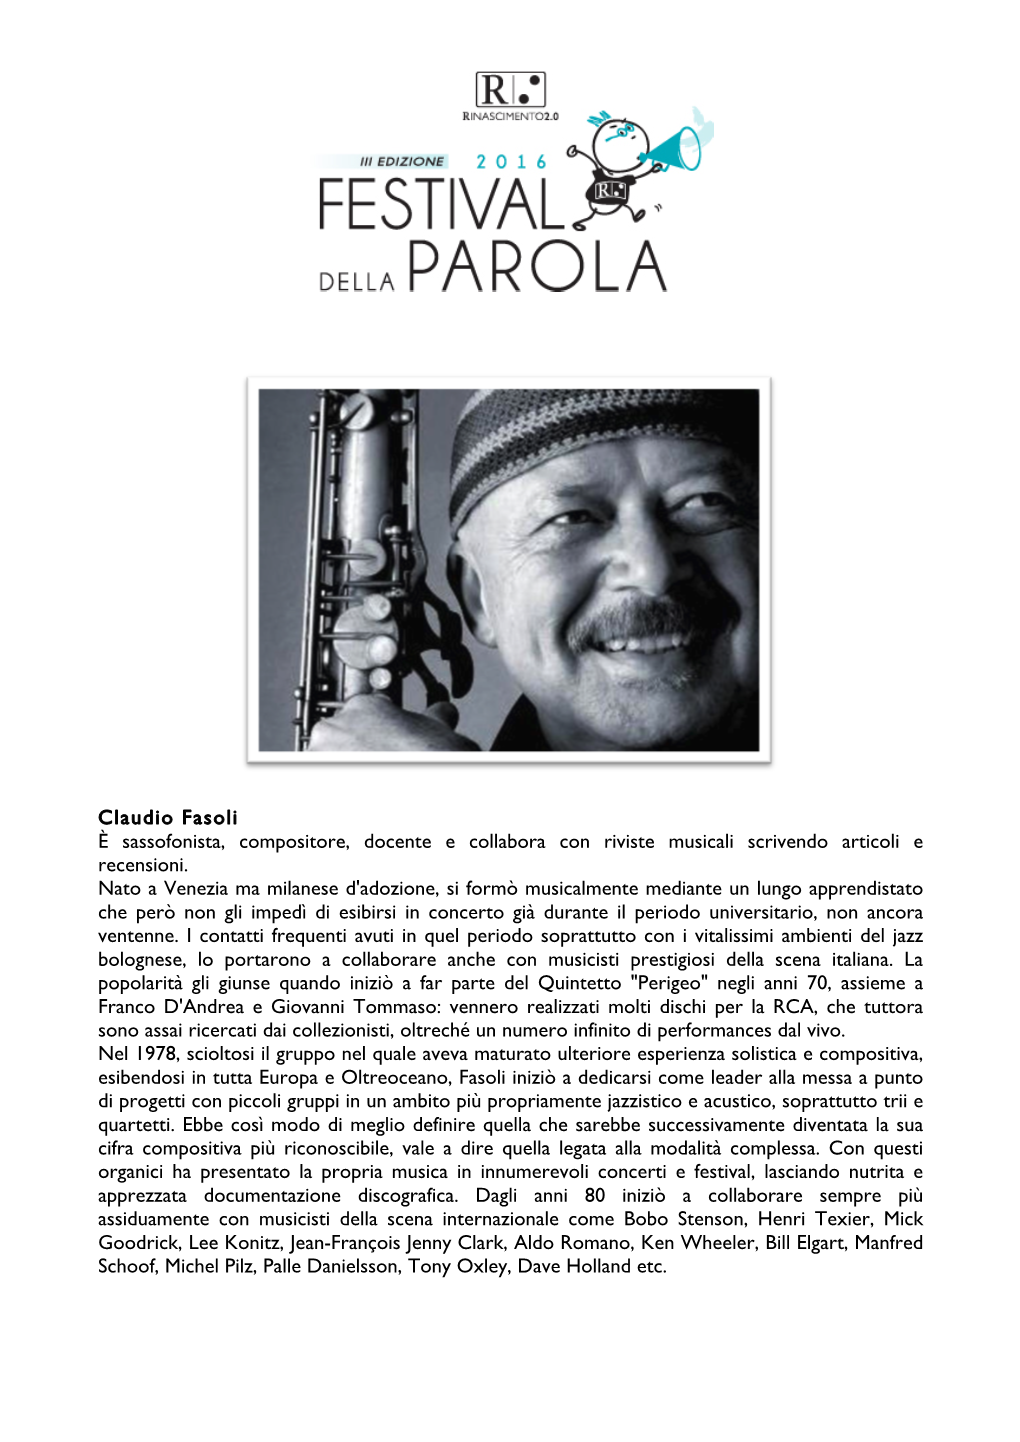 Claudio Fasoli È Sassofonista, Compositore, Docente E Collabora Con Riviste Musicali Scrivendo Articoli E Recensioni